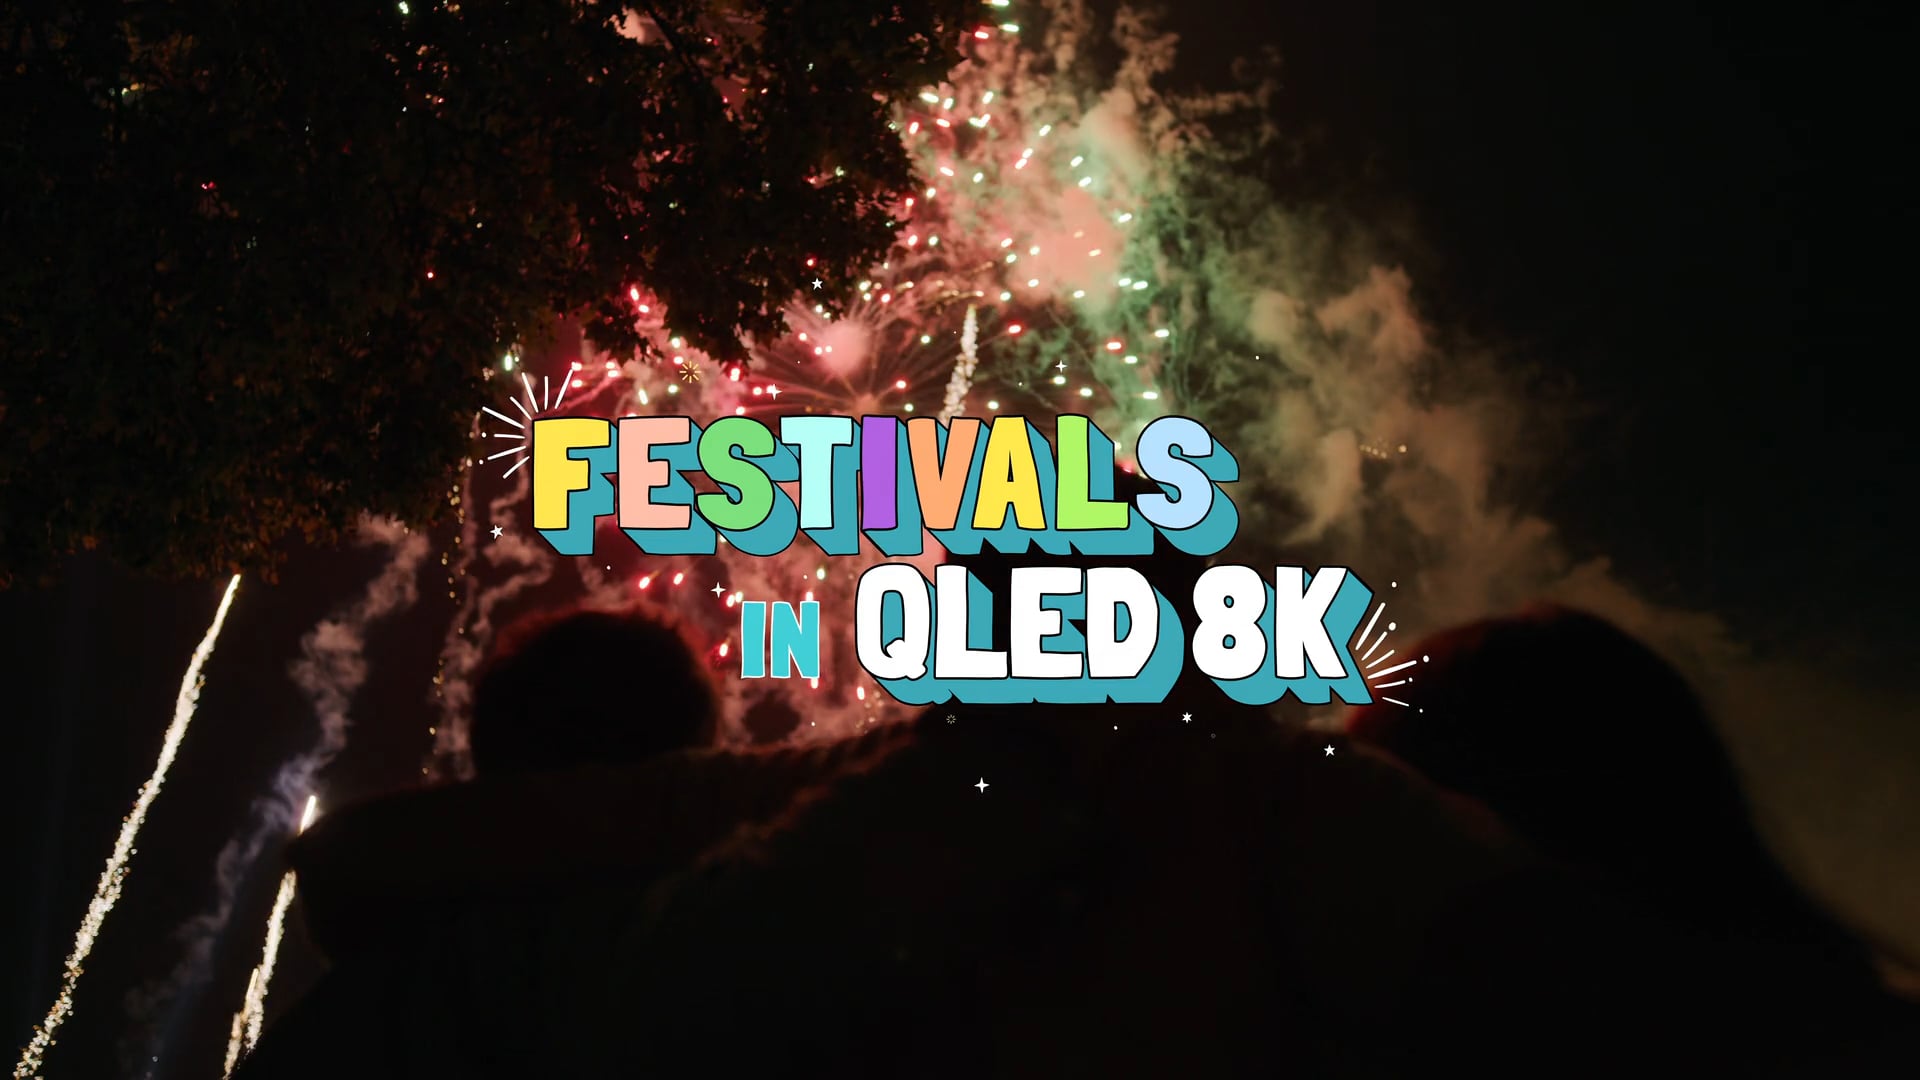 [ UHD 8K ] FESTIVALS IN QLED 8K